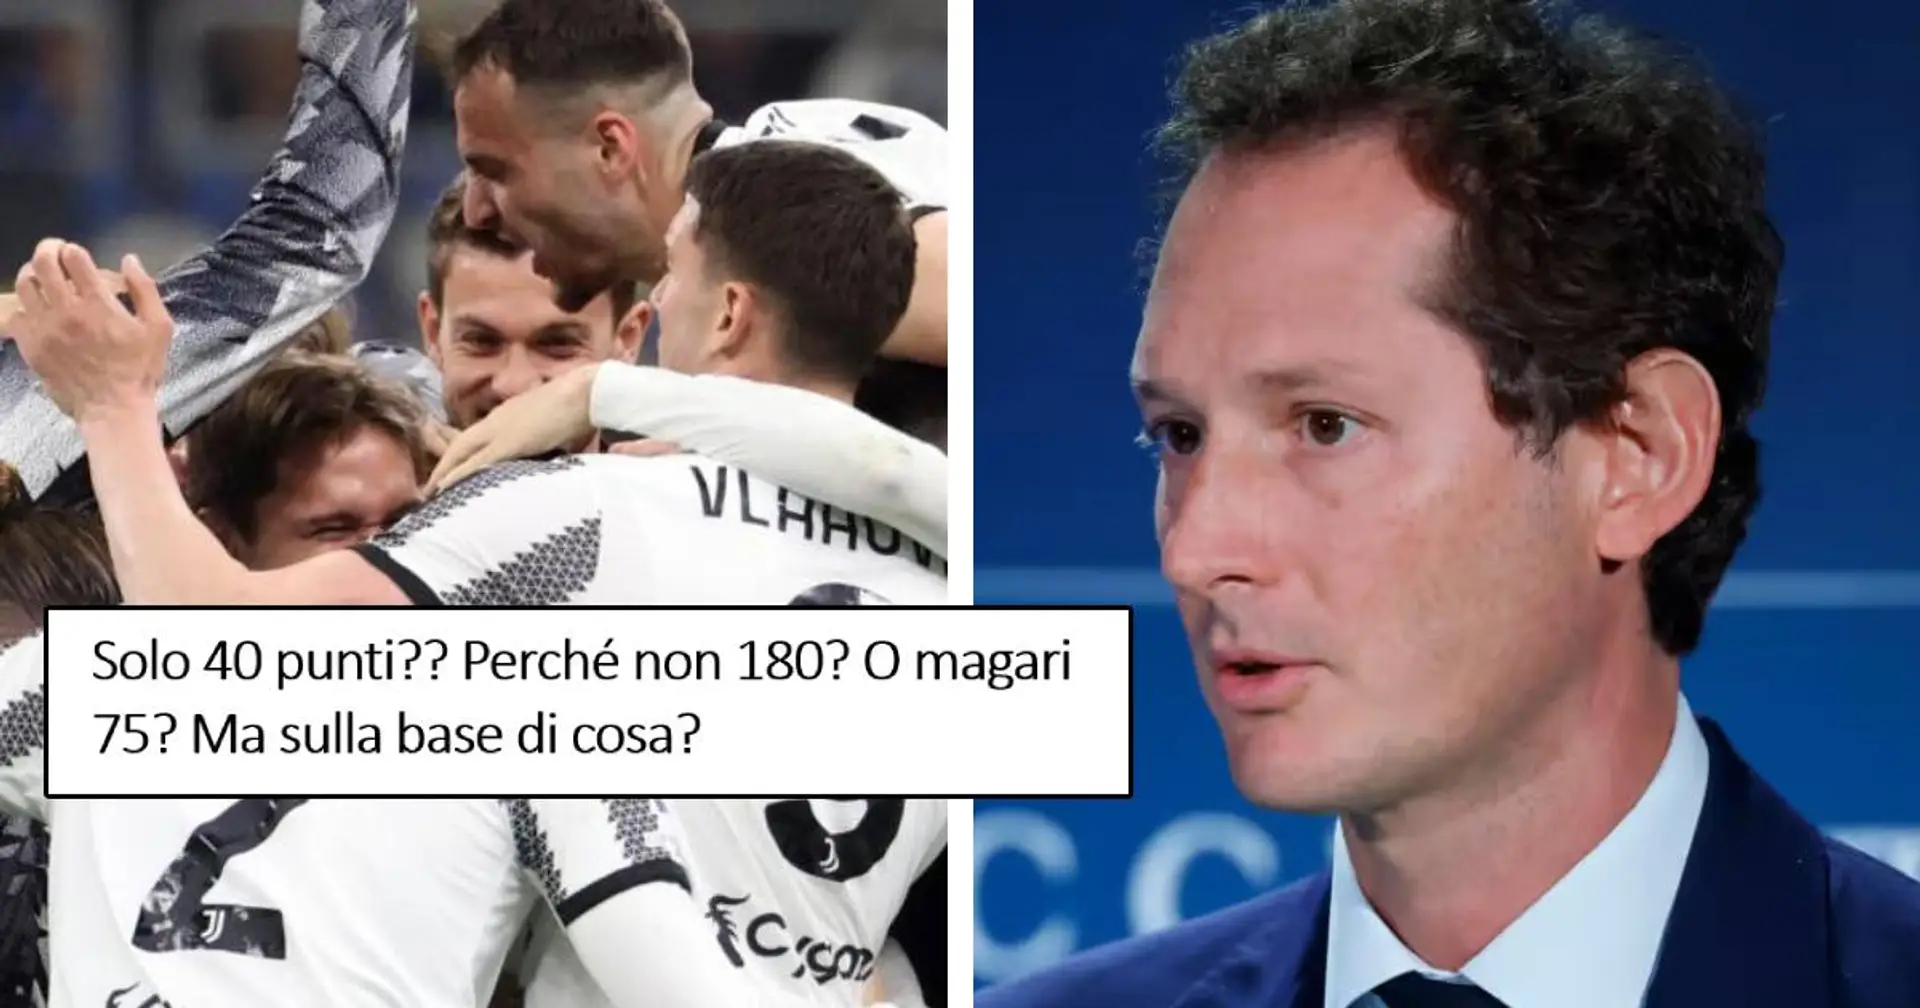 "Ci mandano in B con false accuse!": la rabbia dei tifosi della Juventus per la possibile nuova penalizzazione